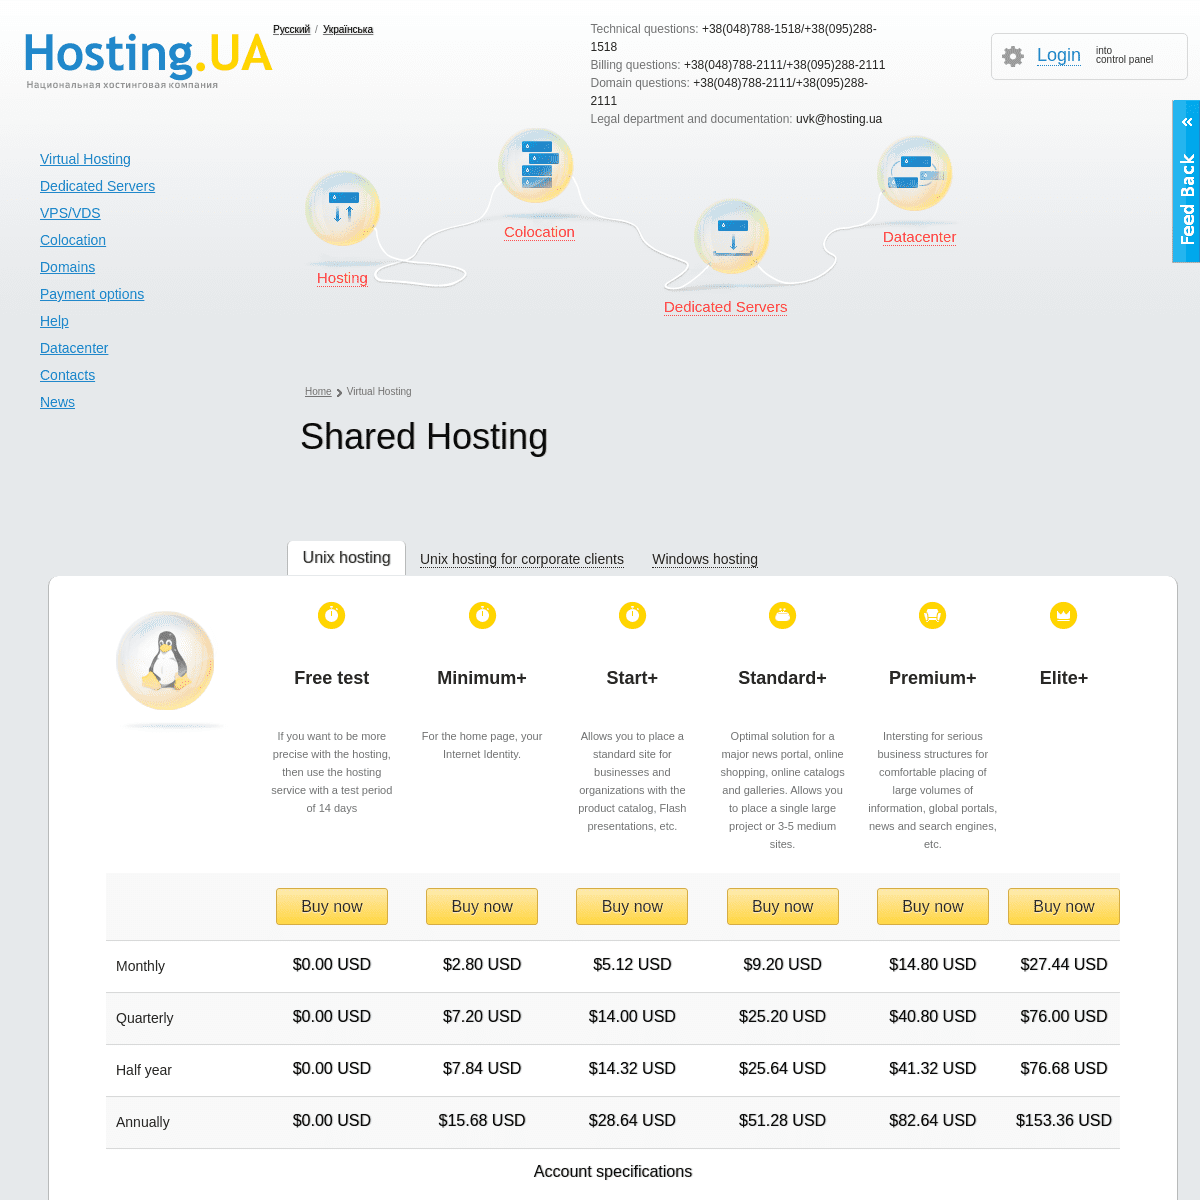 A complete backup of https://hosting.ua